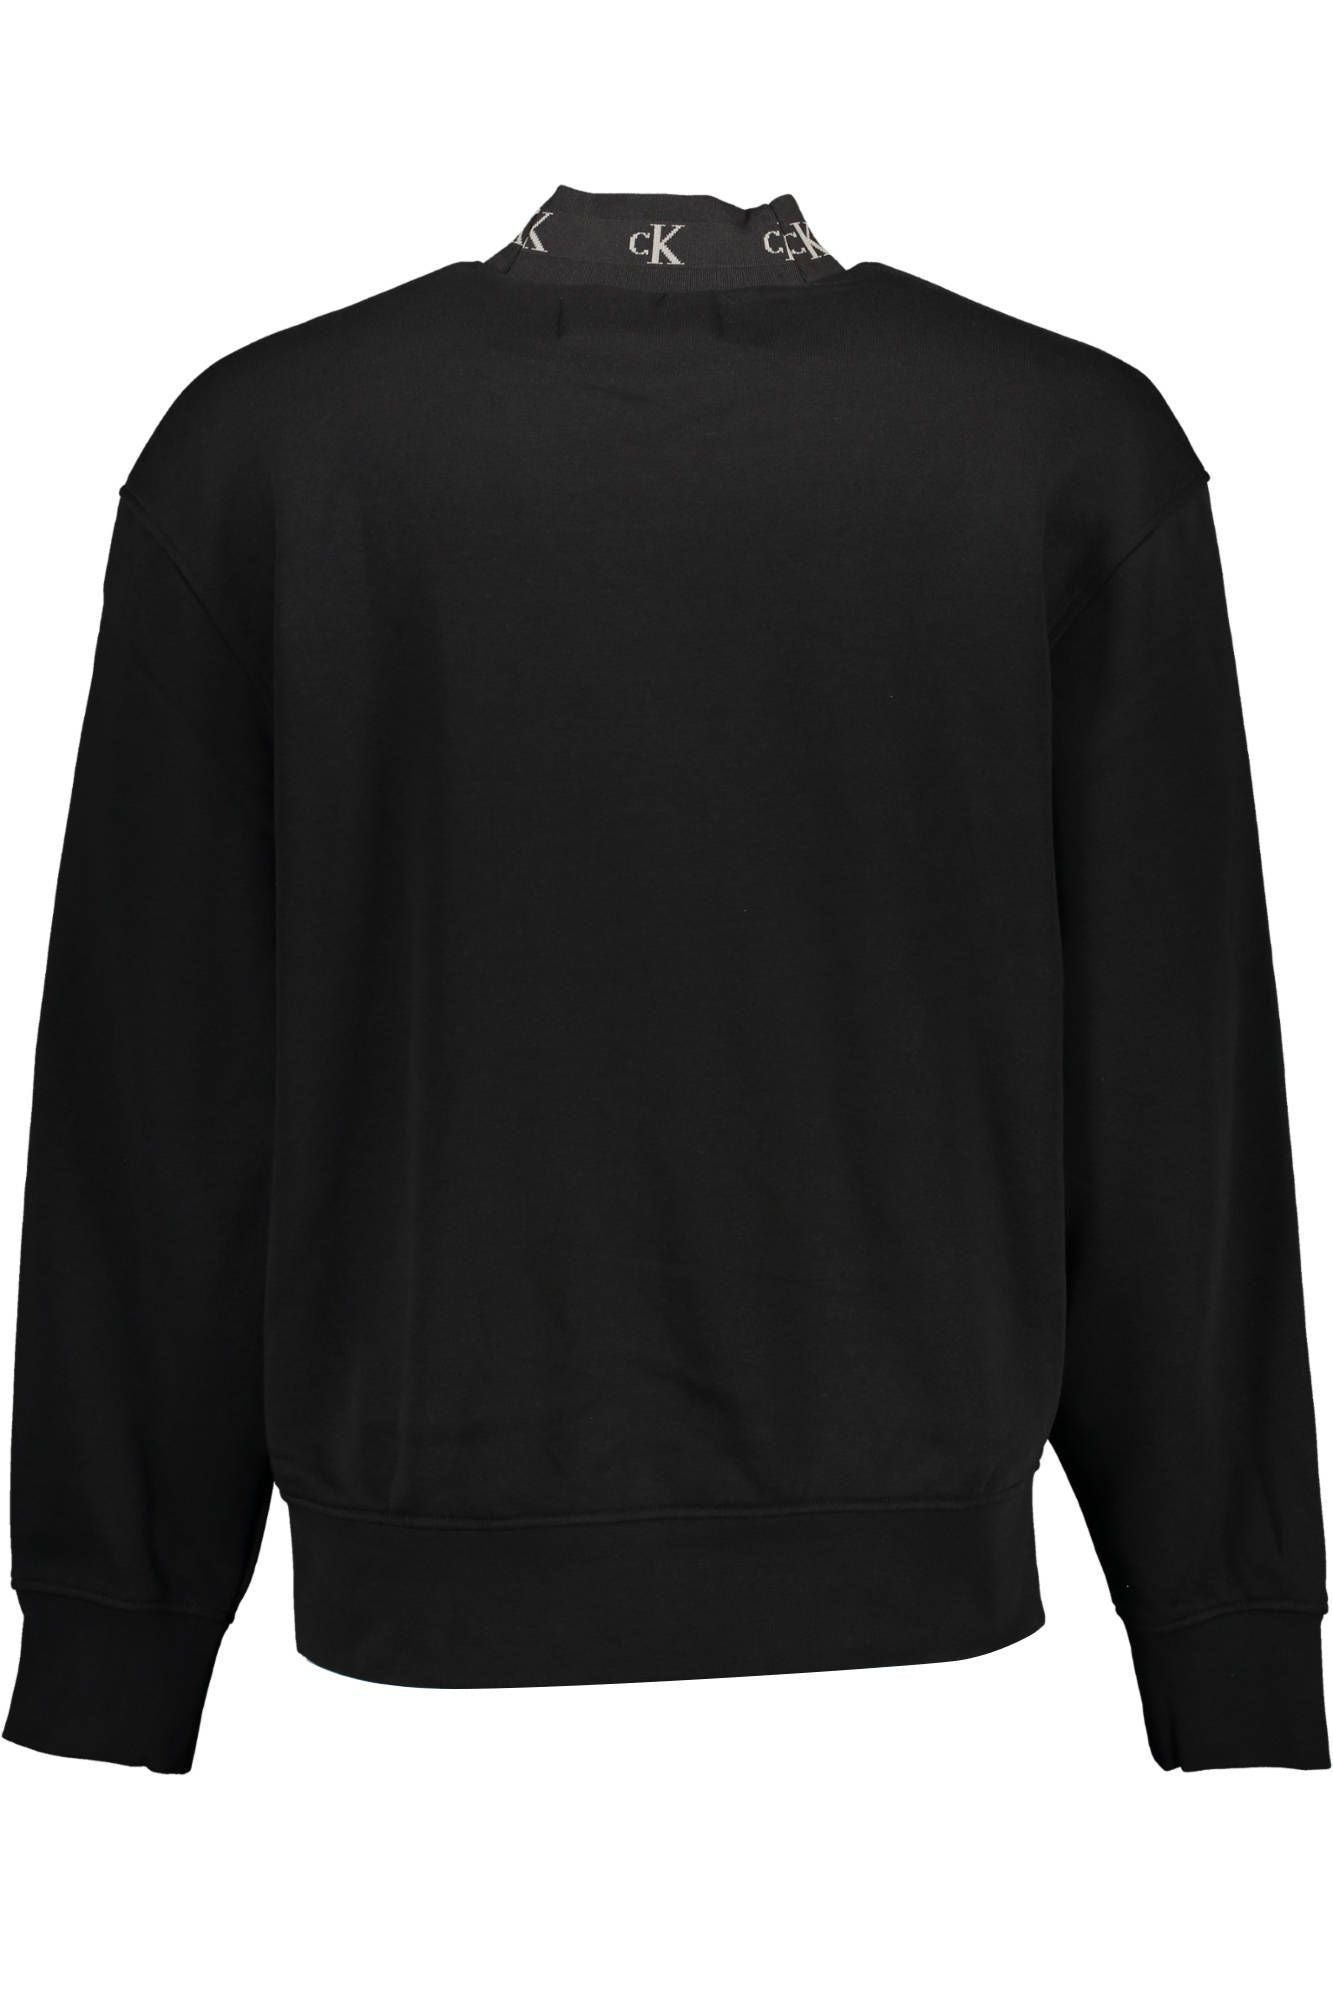 Sleek Cotton Sweatshirt with Embroidery